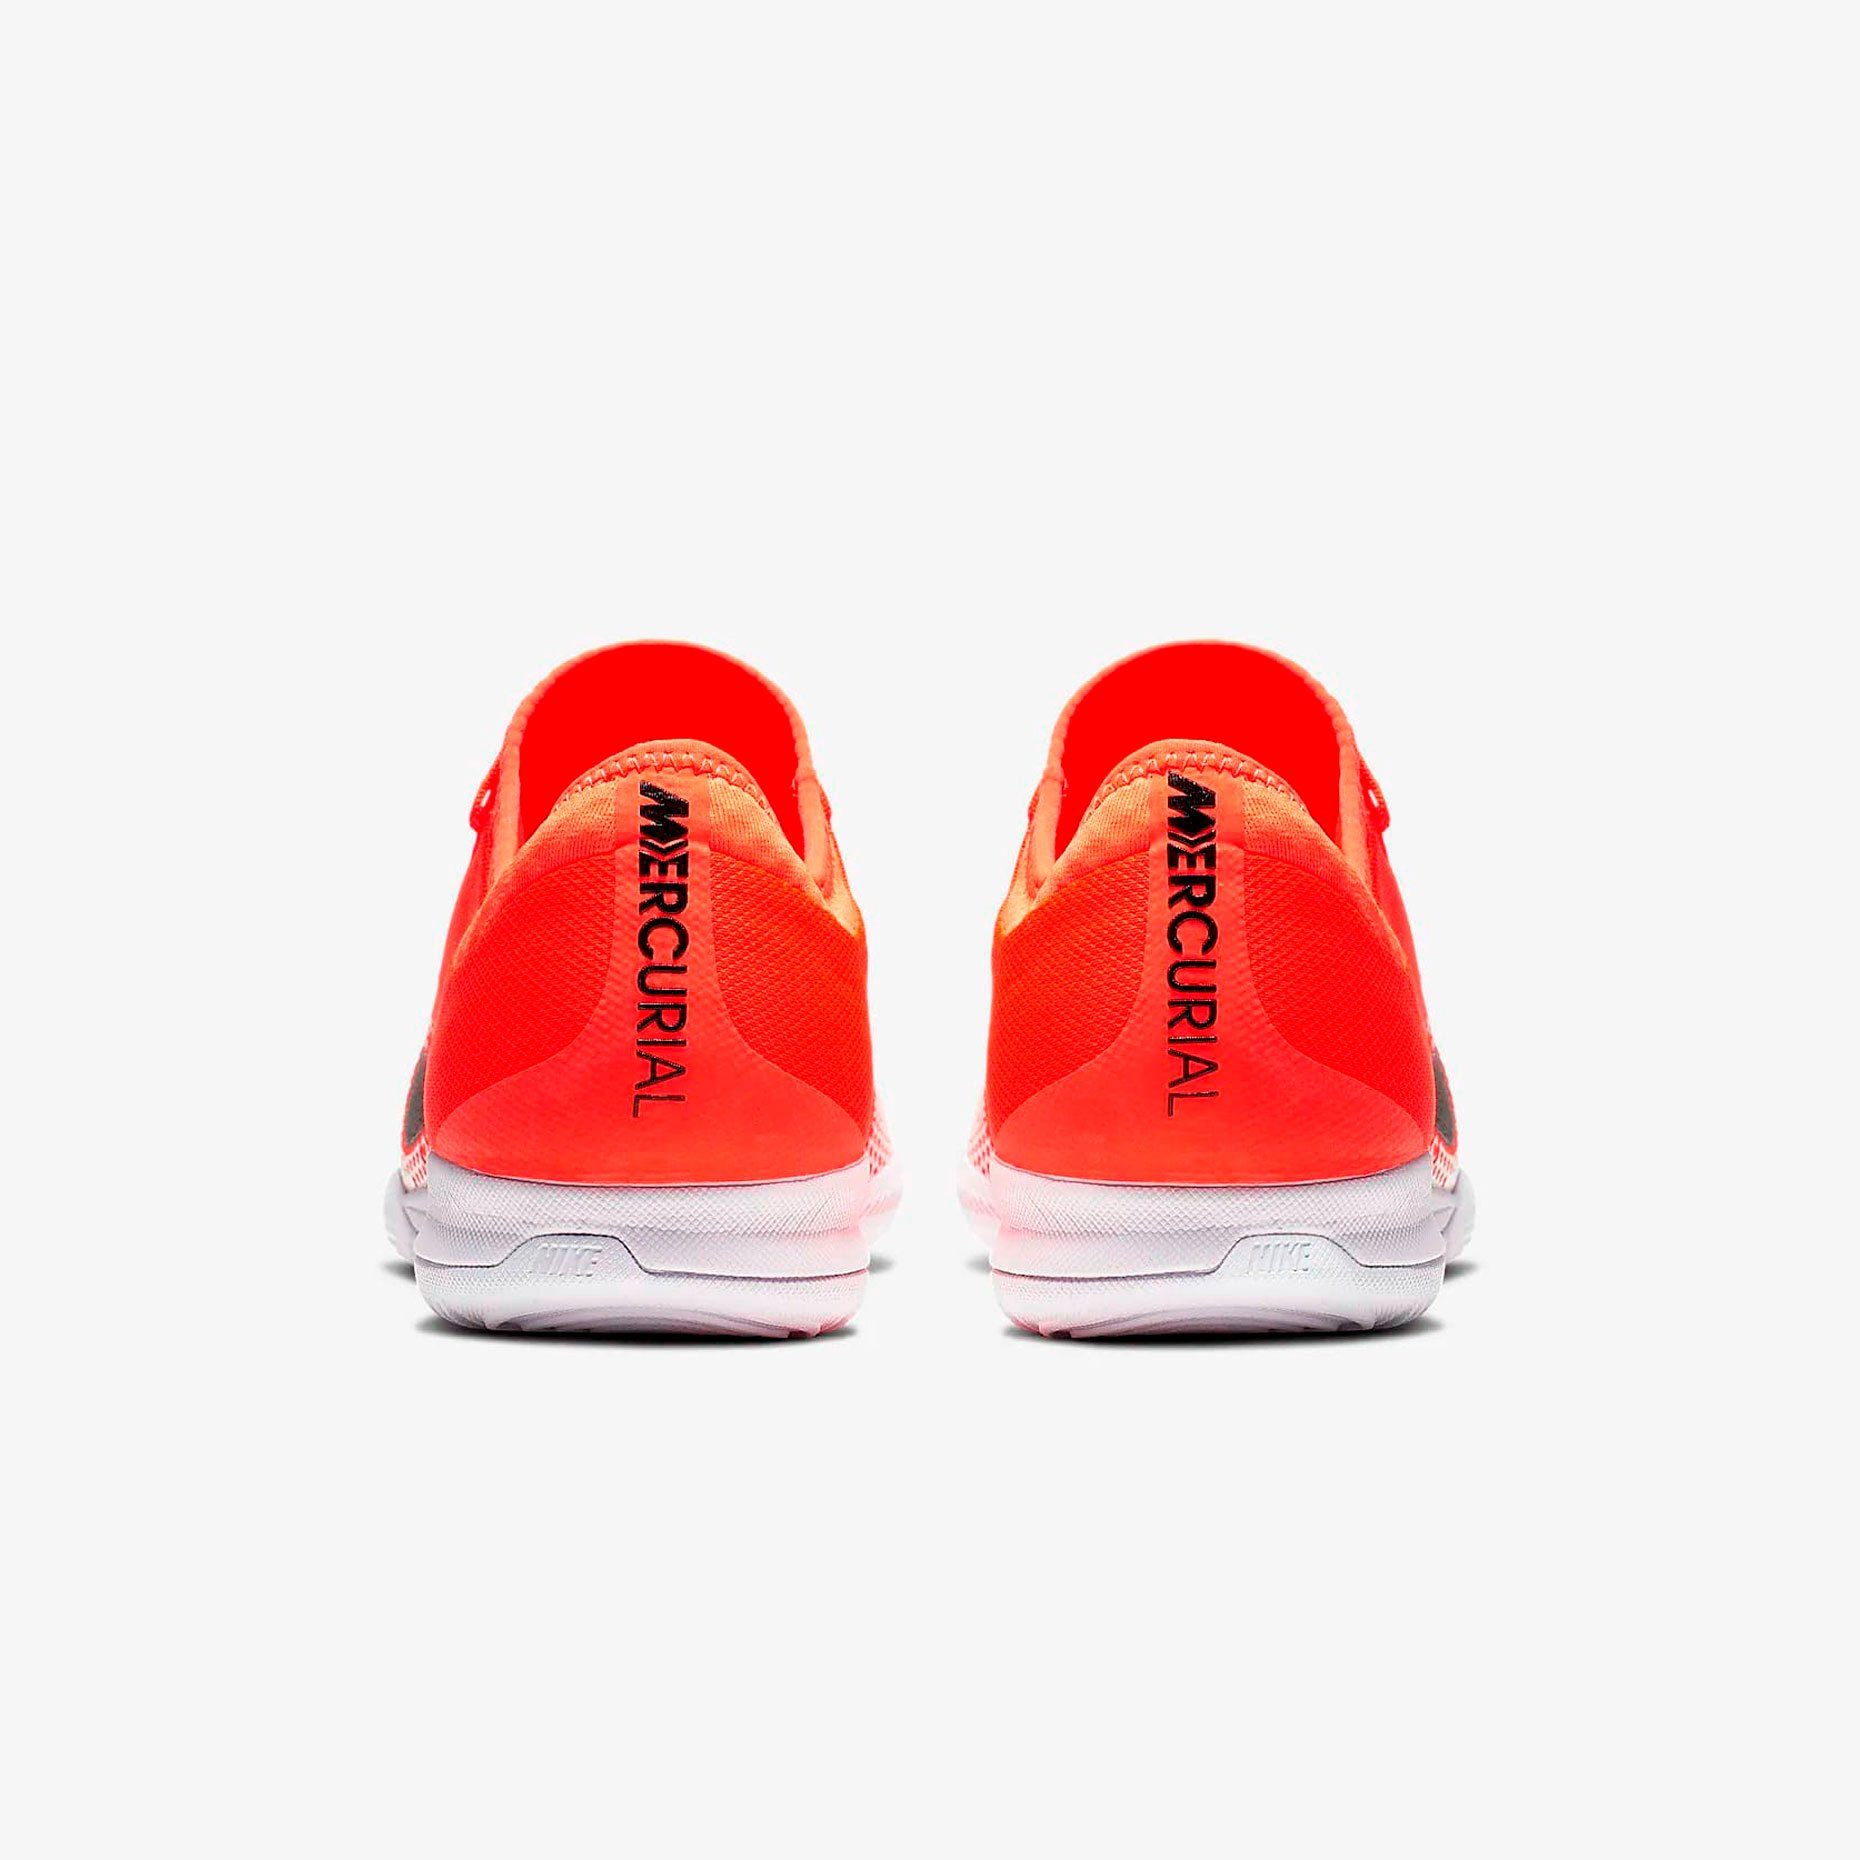 Игровая обувь для зала Nike Mercurial Vapor 12 Pro IC